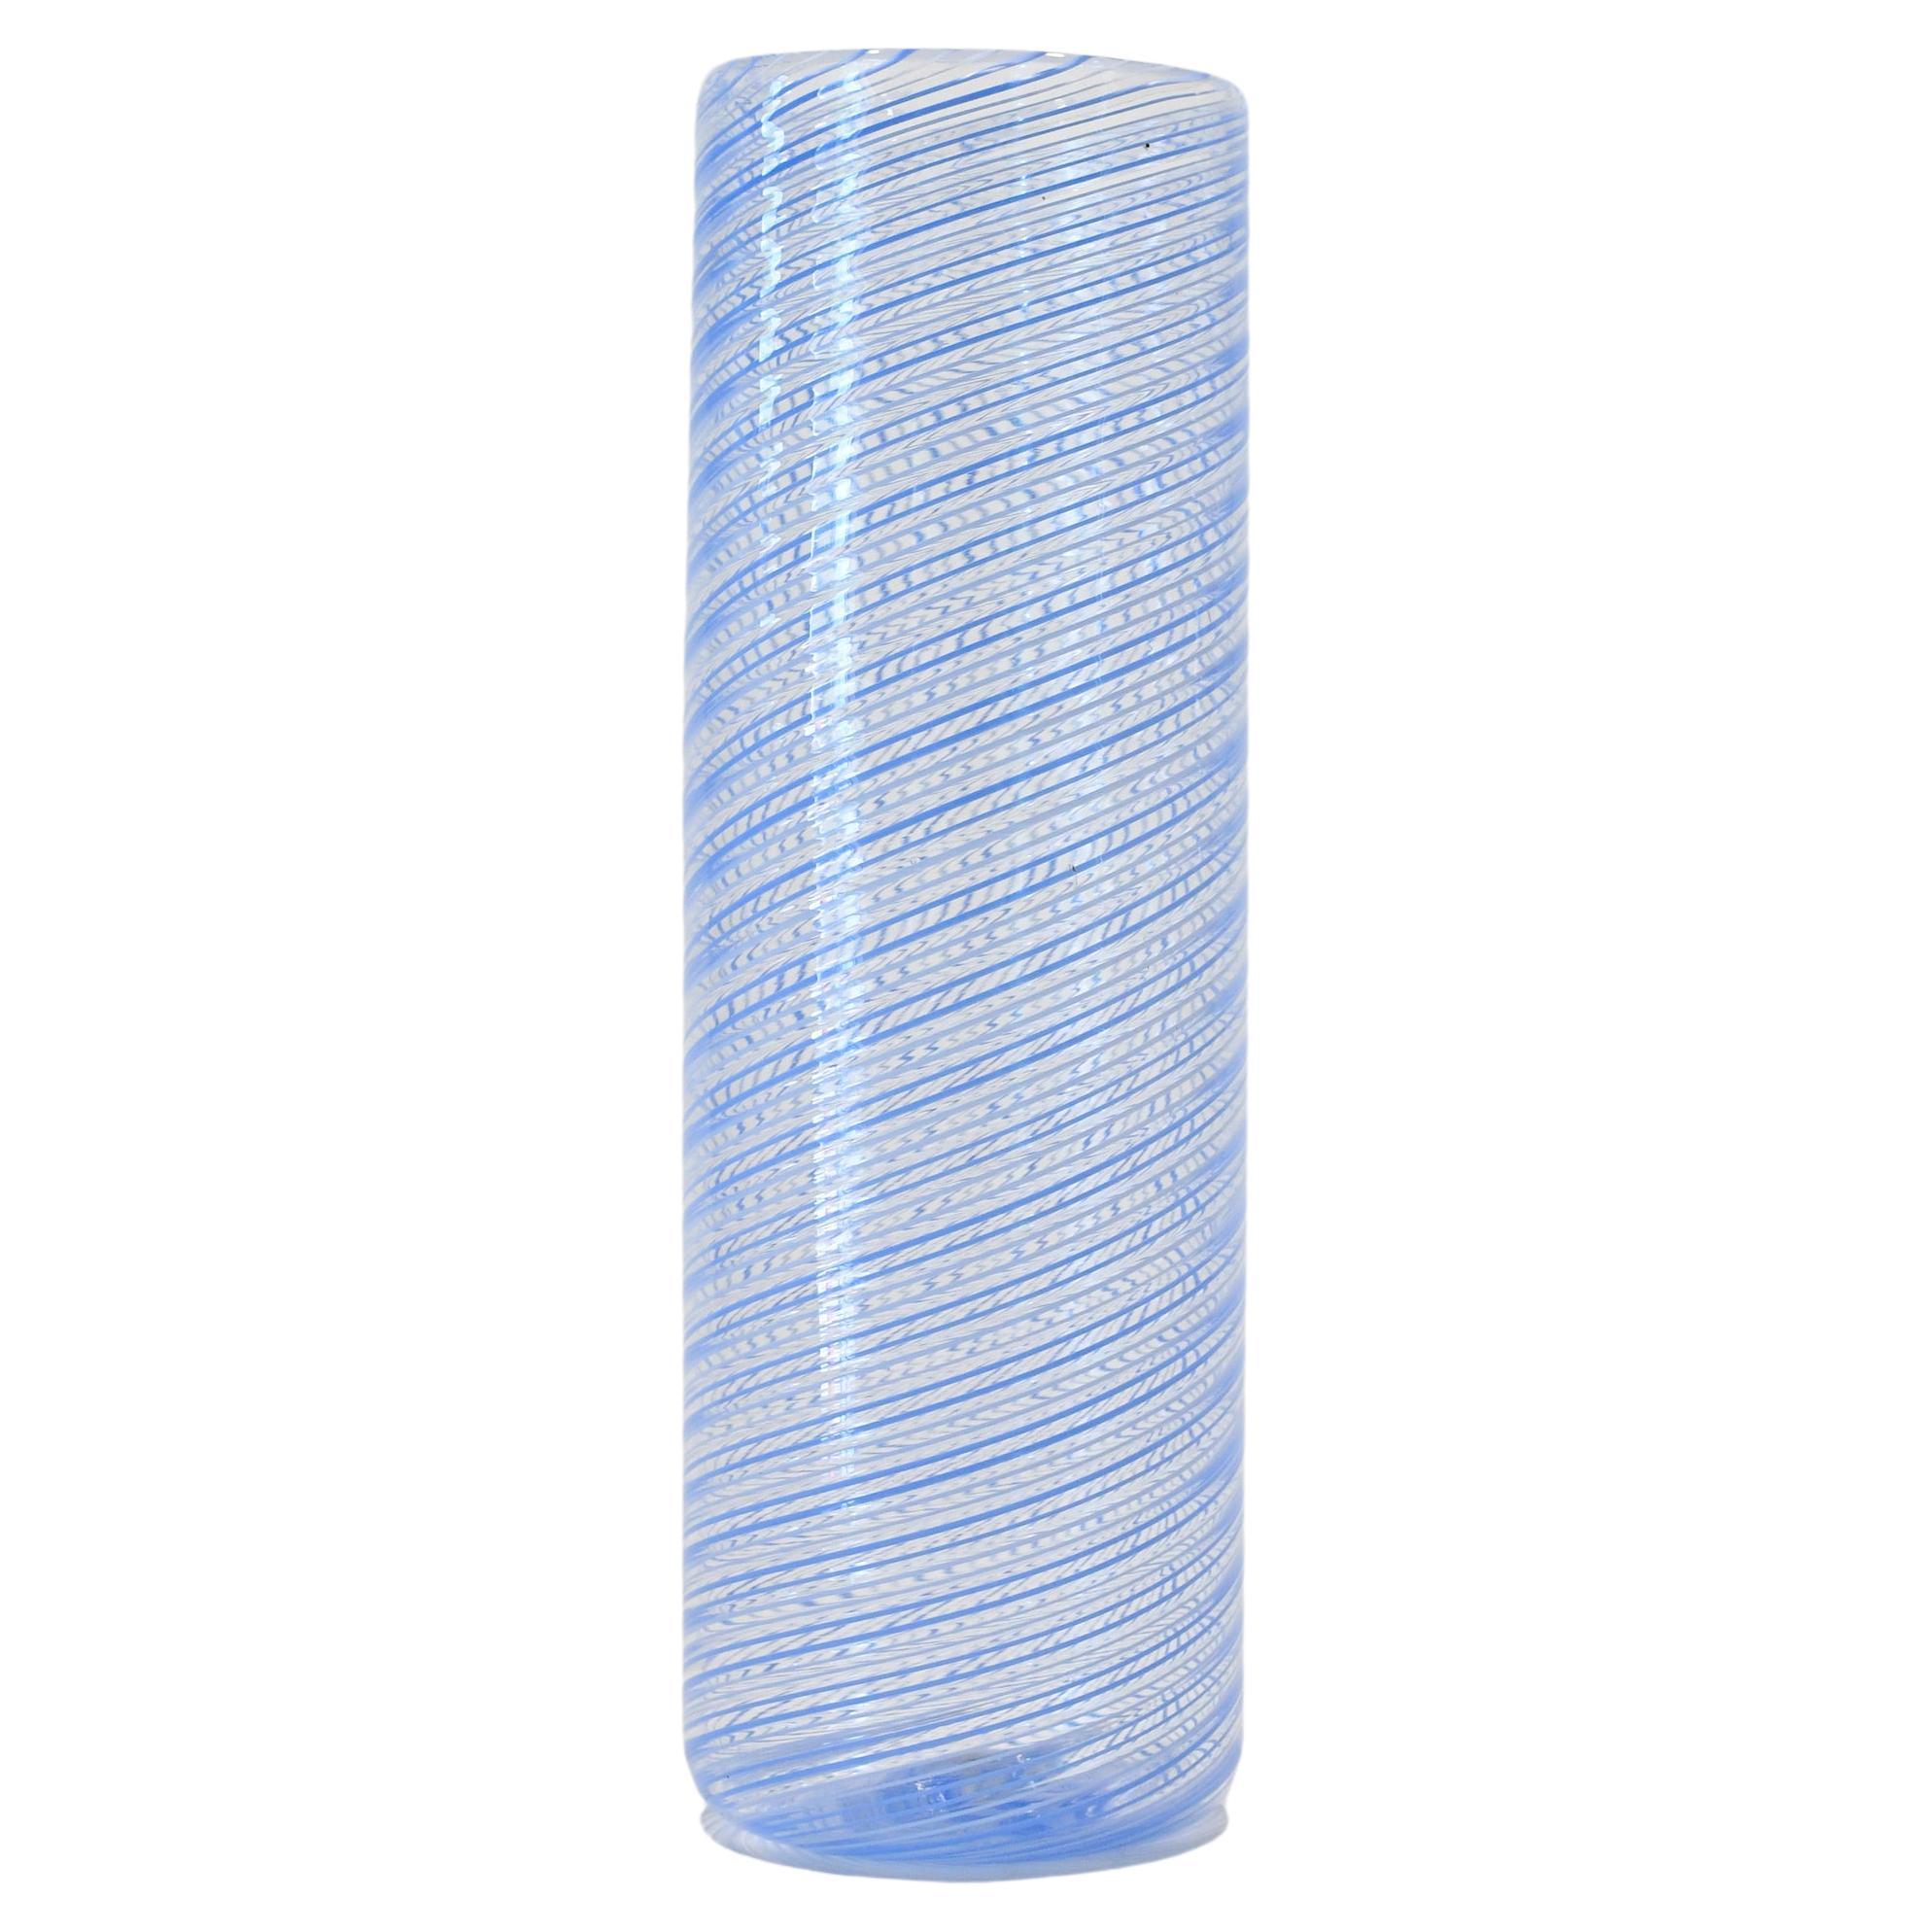 Contemporary Murano Glass Doppio Filo Vase, Periwinkle White by Laura Sattin For Sale